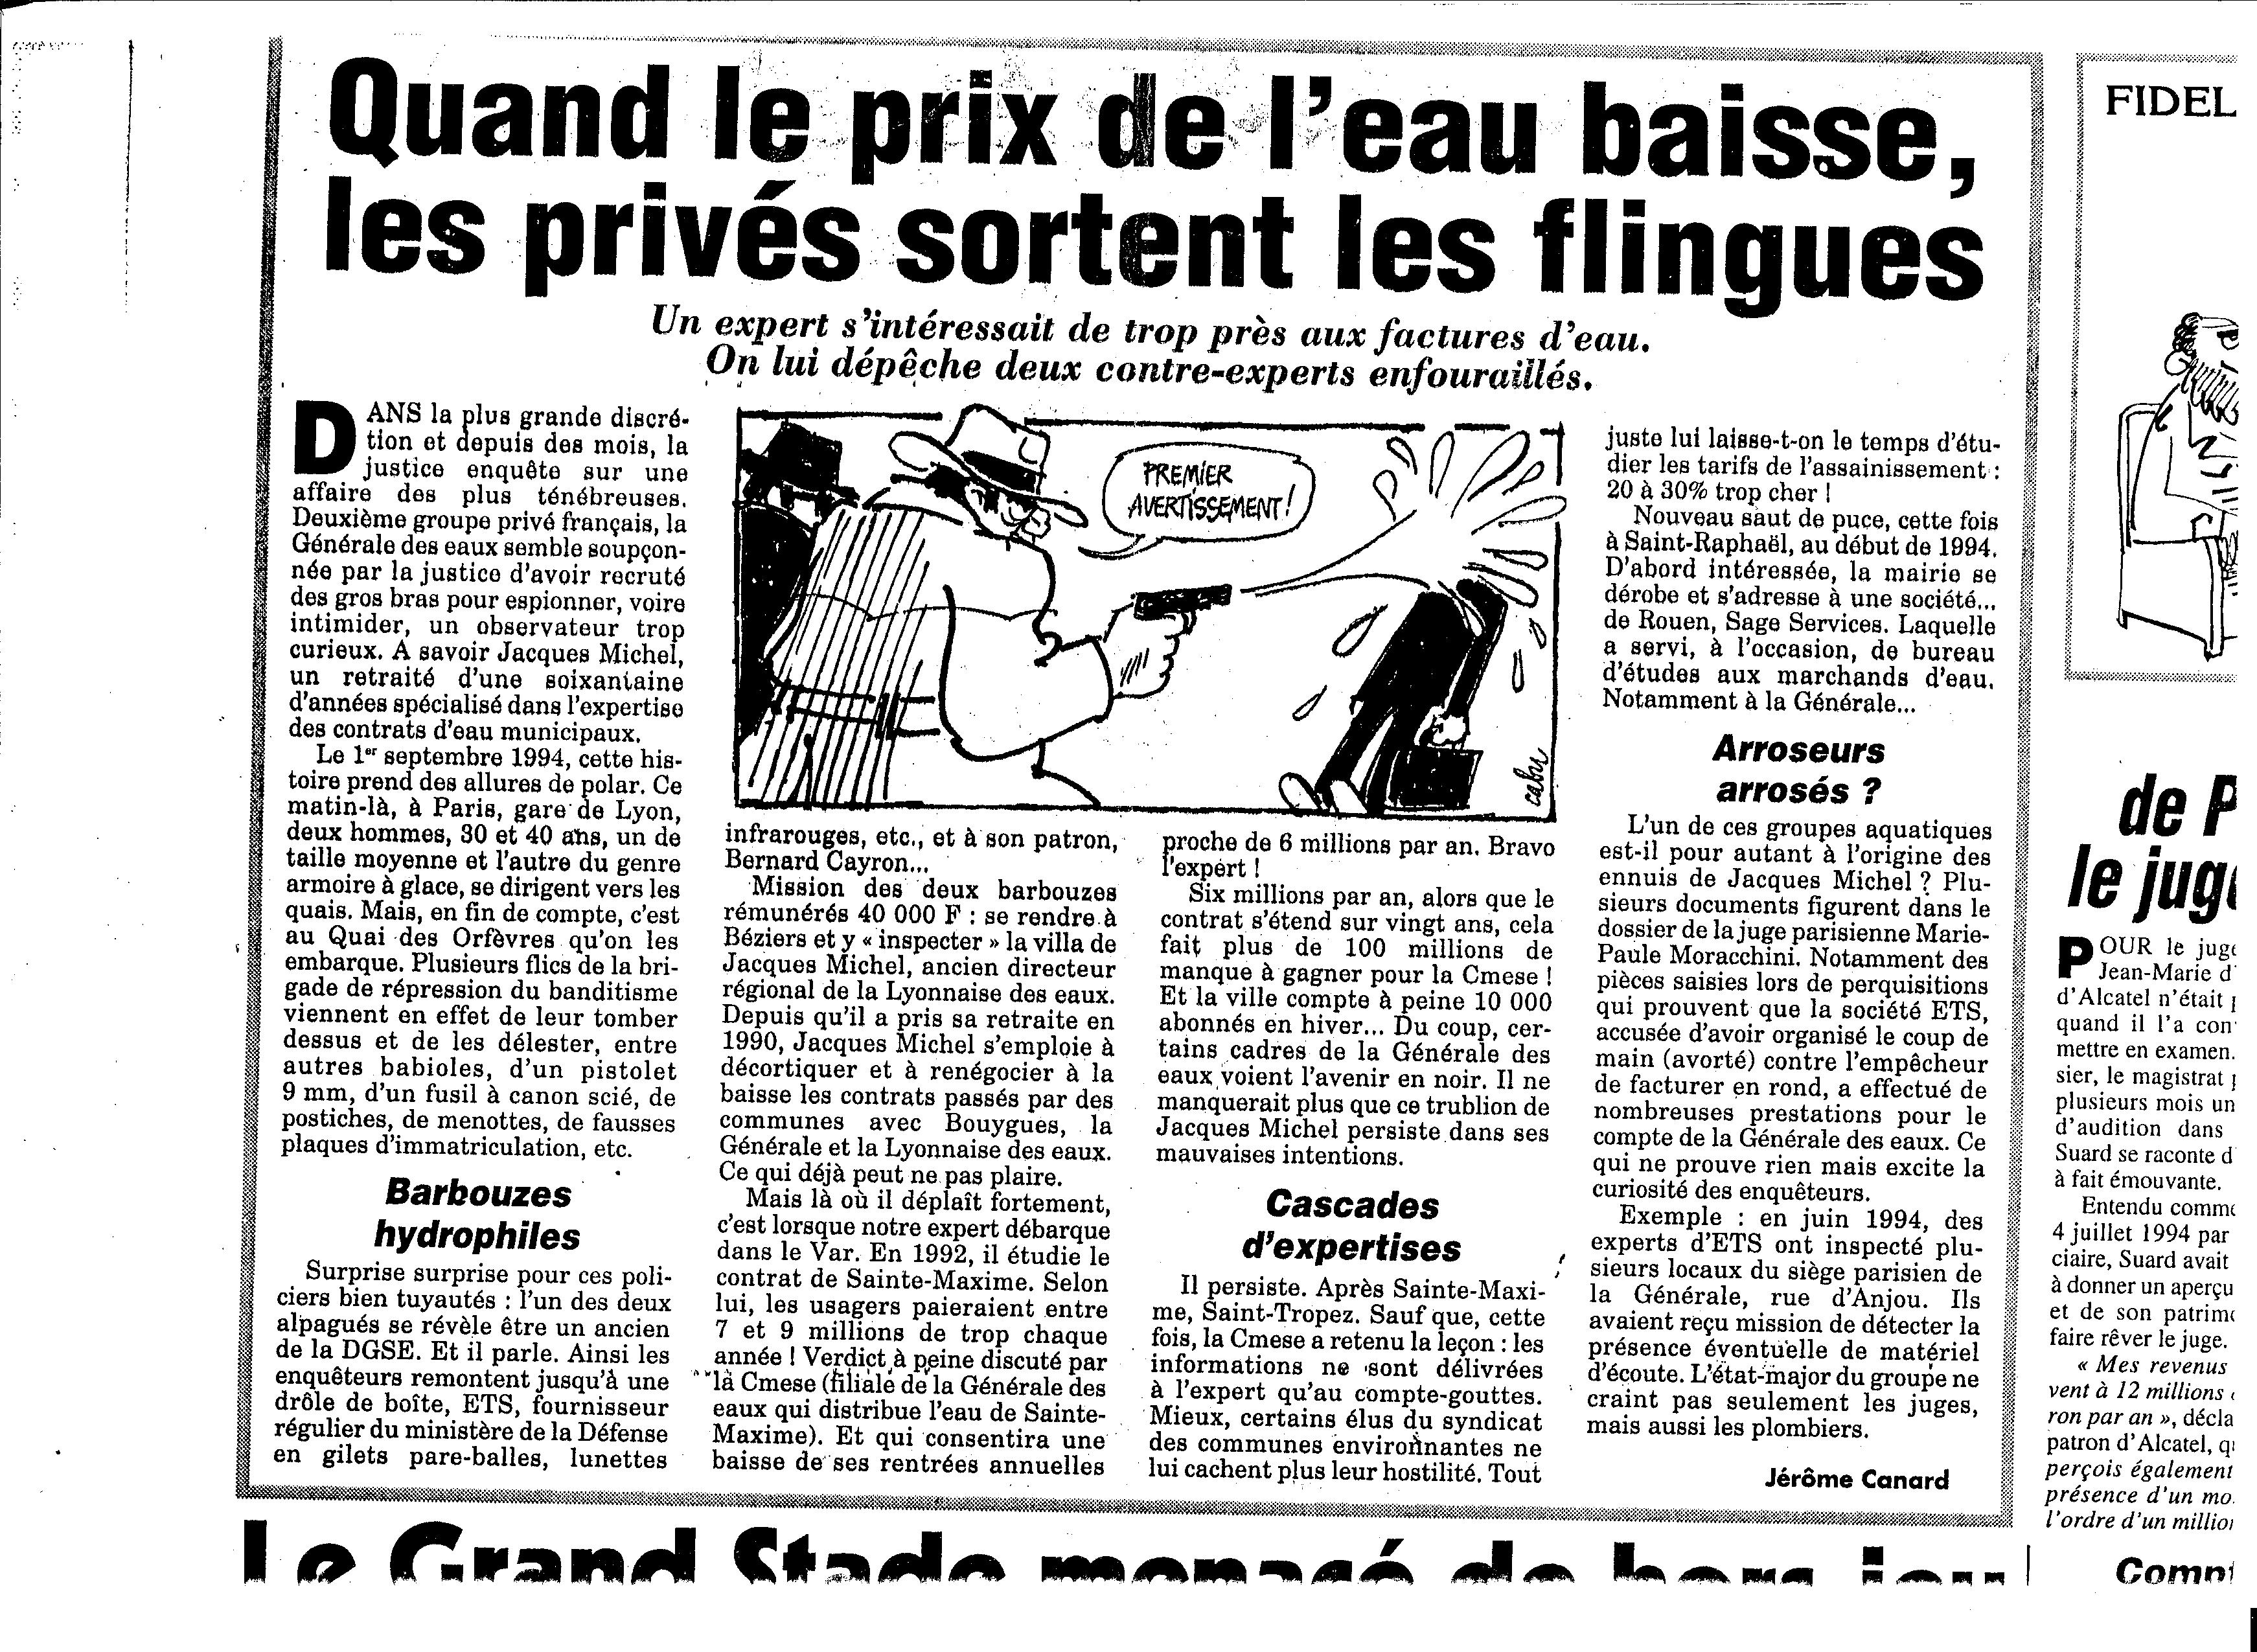 L'Affaire Jacques Michel, Le Canard Enchaïné, 1994.